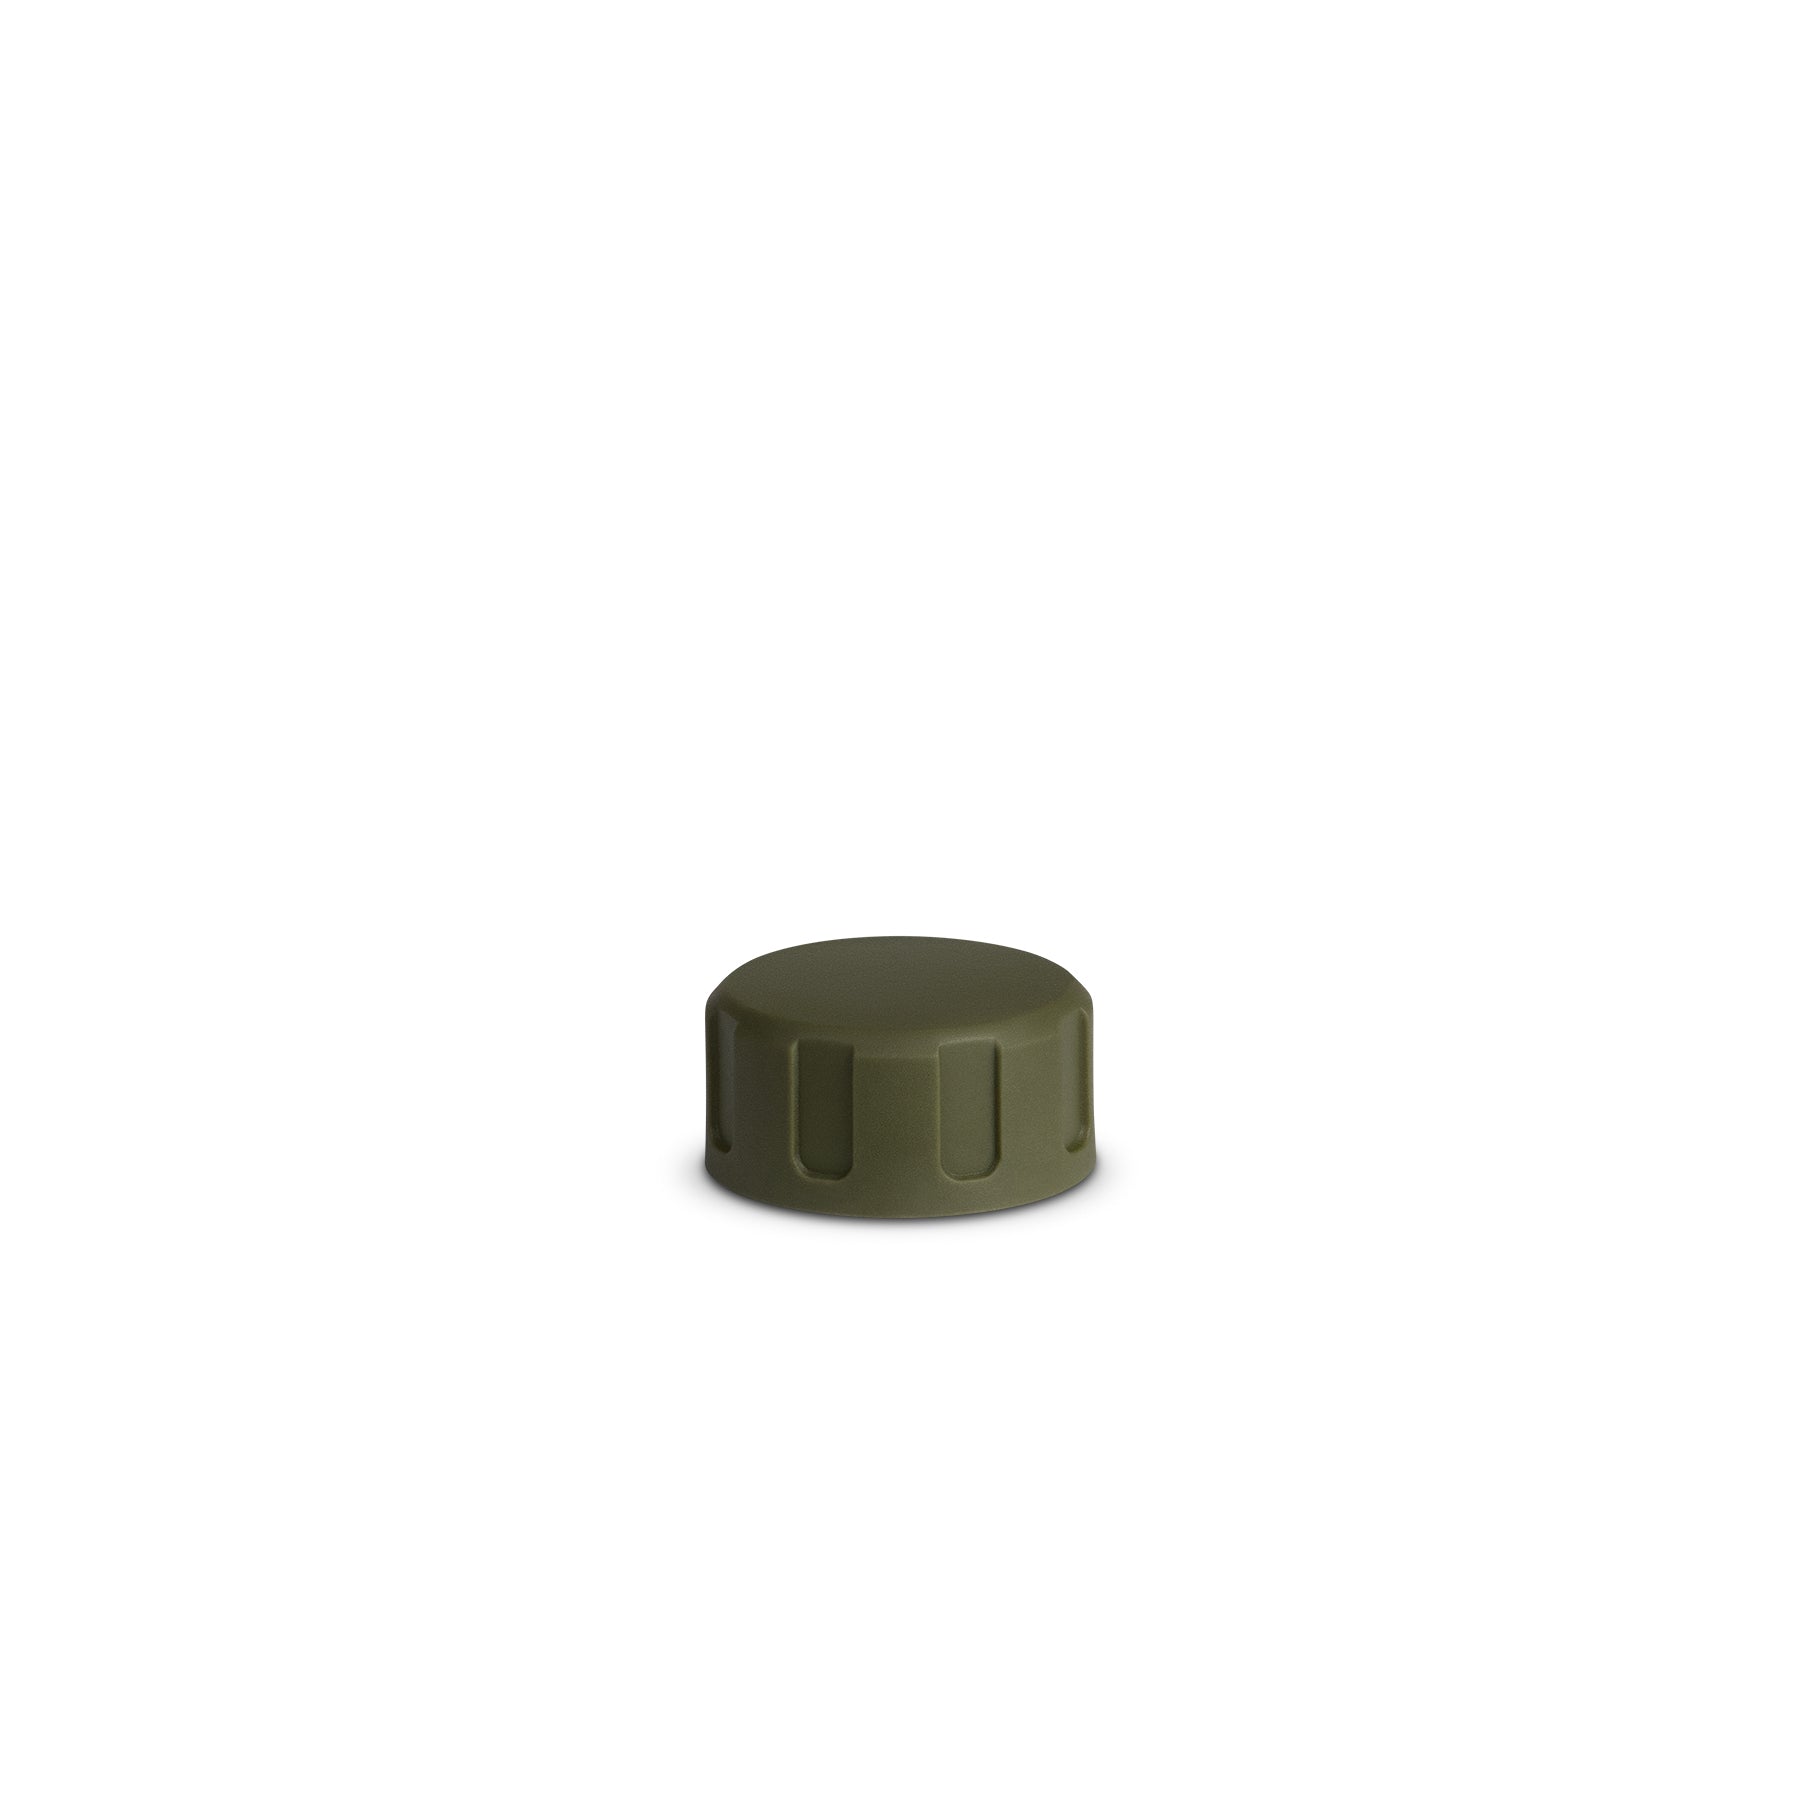 UltraPress® Replacement Spout Cap / Covert Black